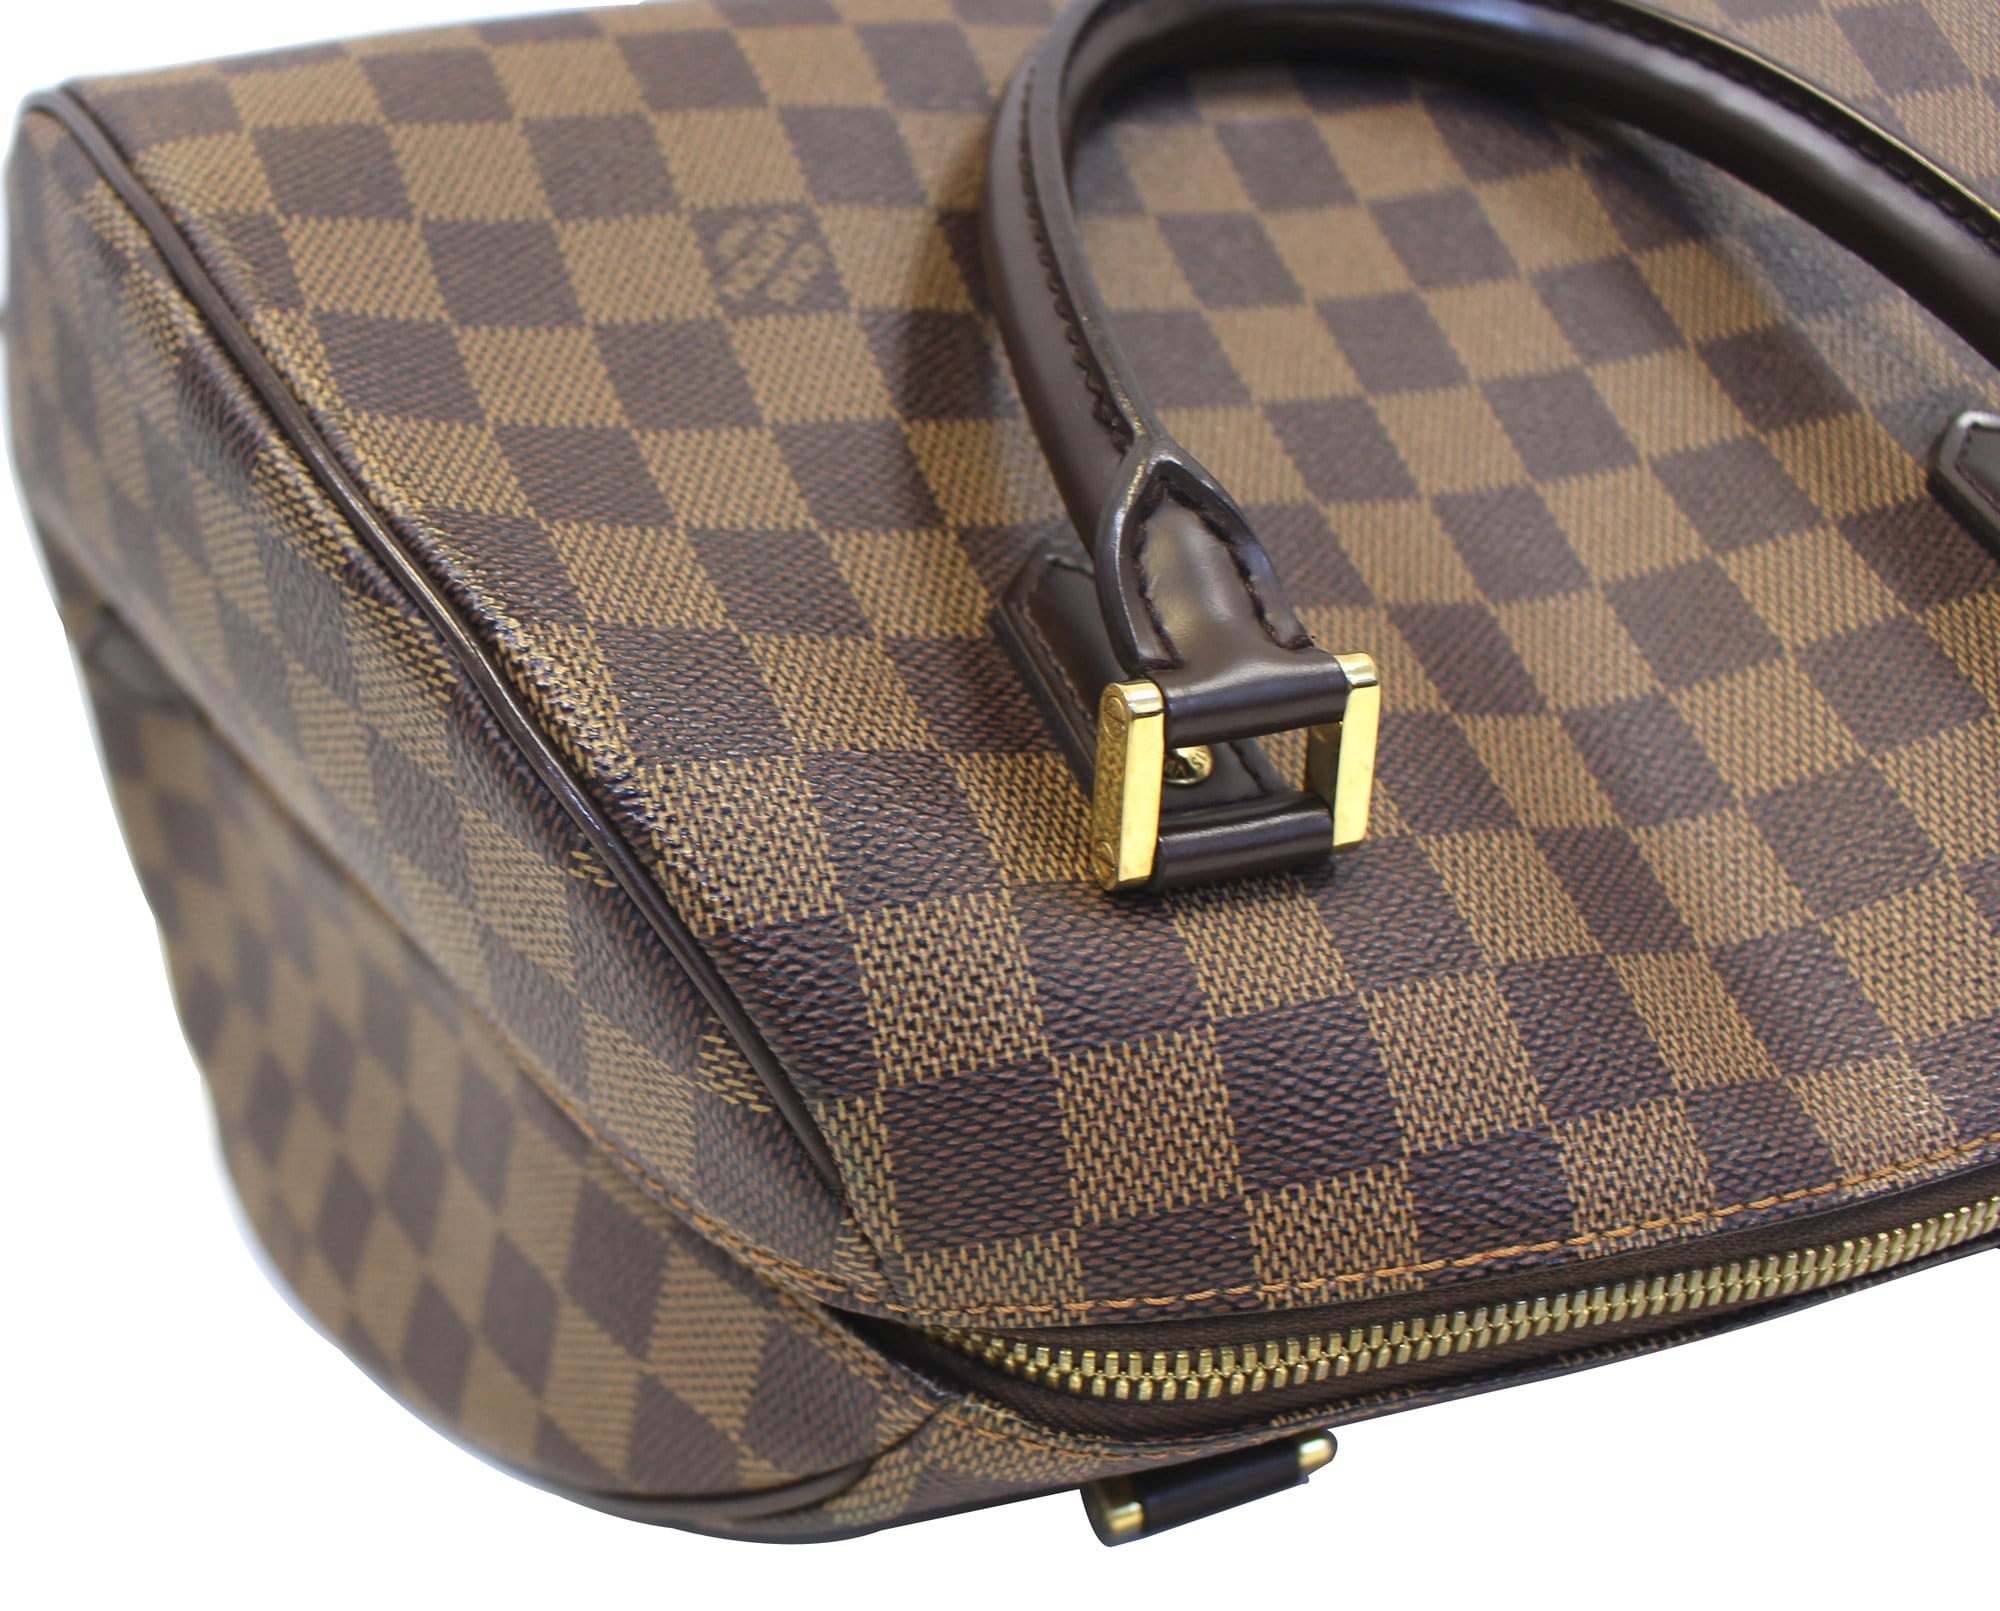 Louis Vuitton Damier Riebera Brown & Black Check Bag - Satchel $643